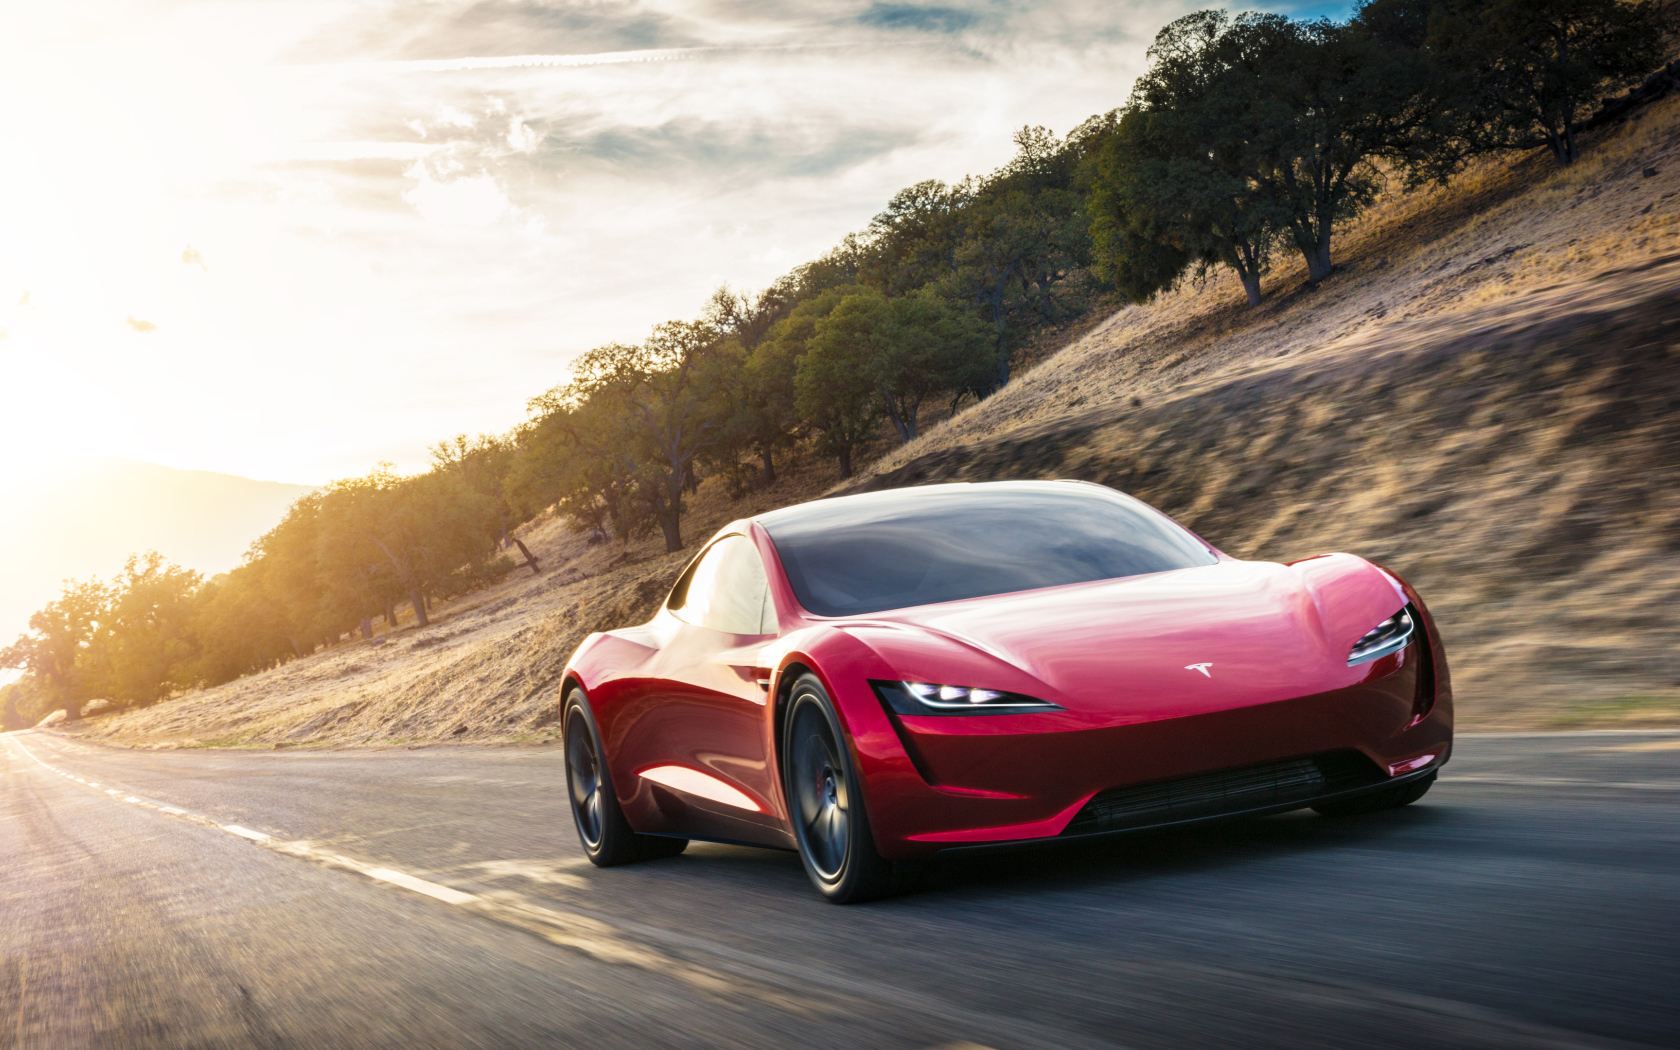 Красный электромобиль Tesla Roadster, 2020 на трассе